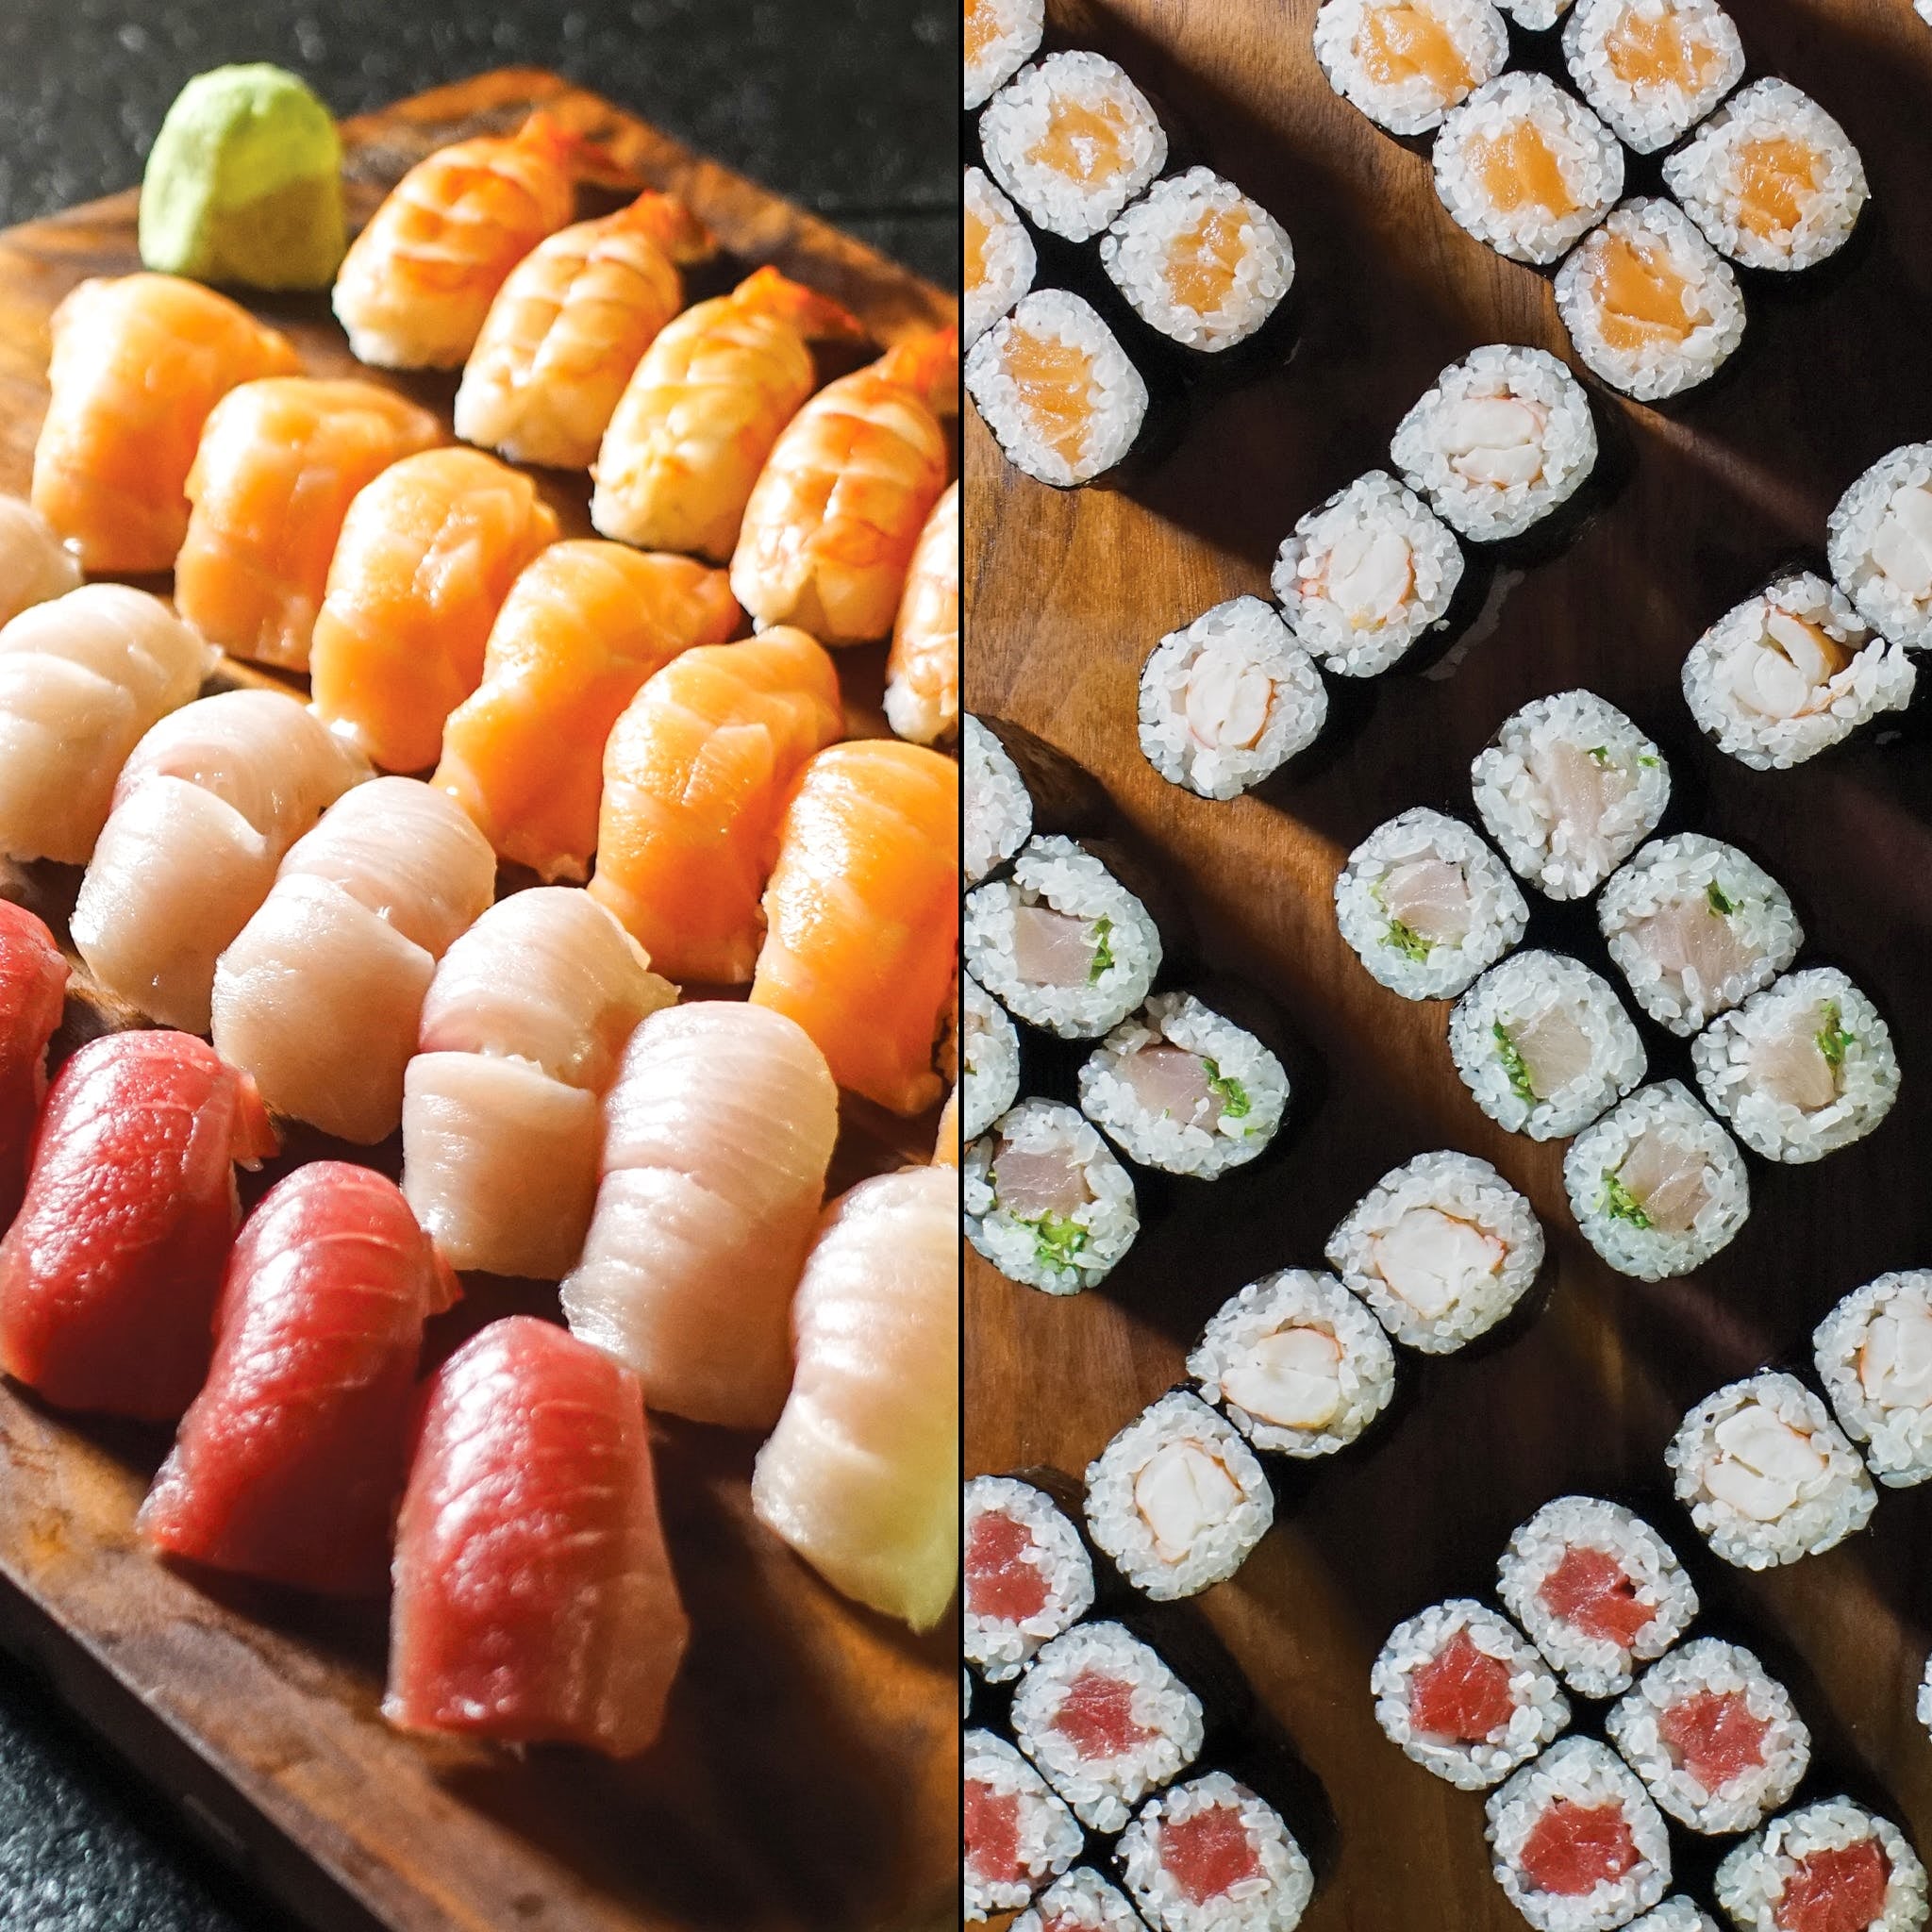 Sushi Kit -  UK